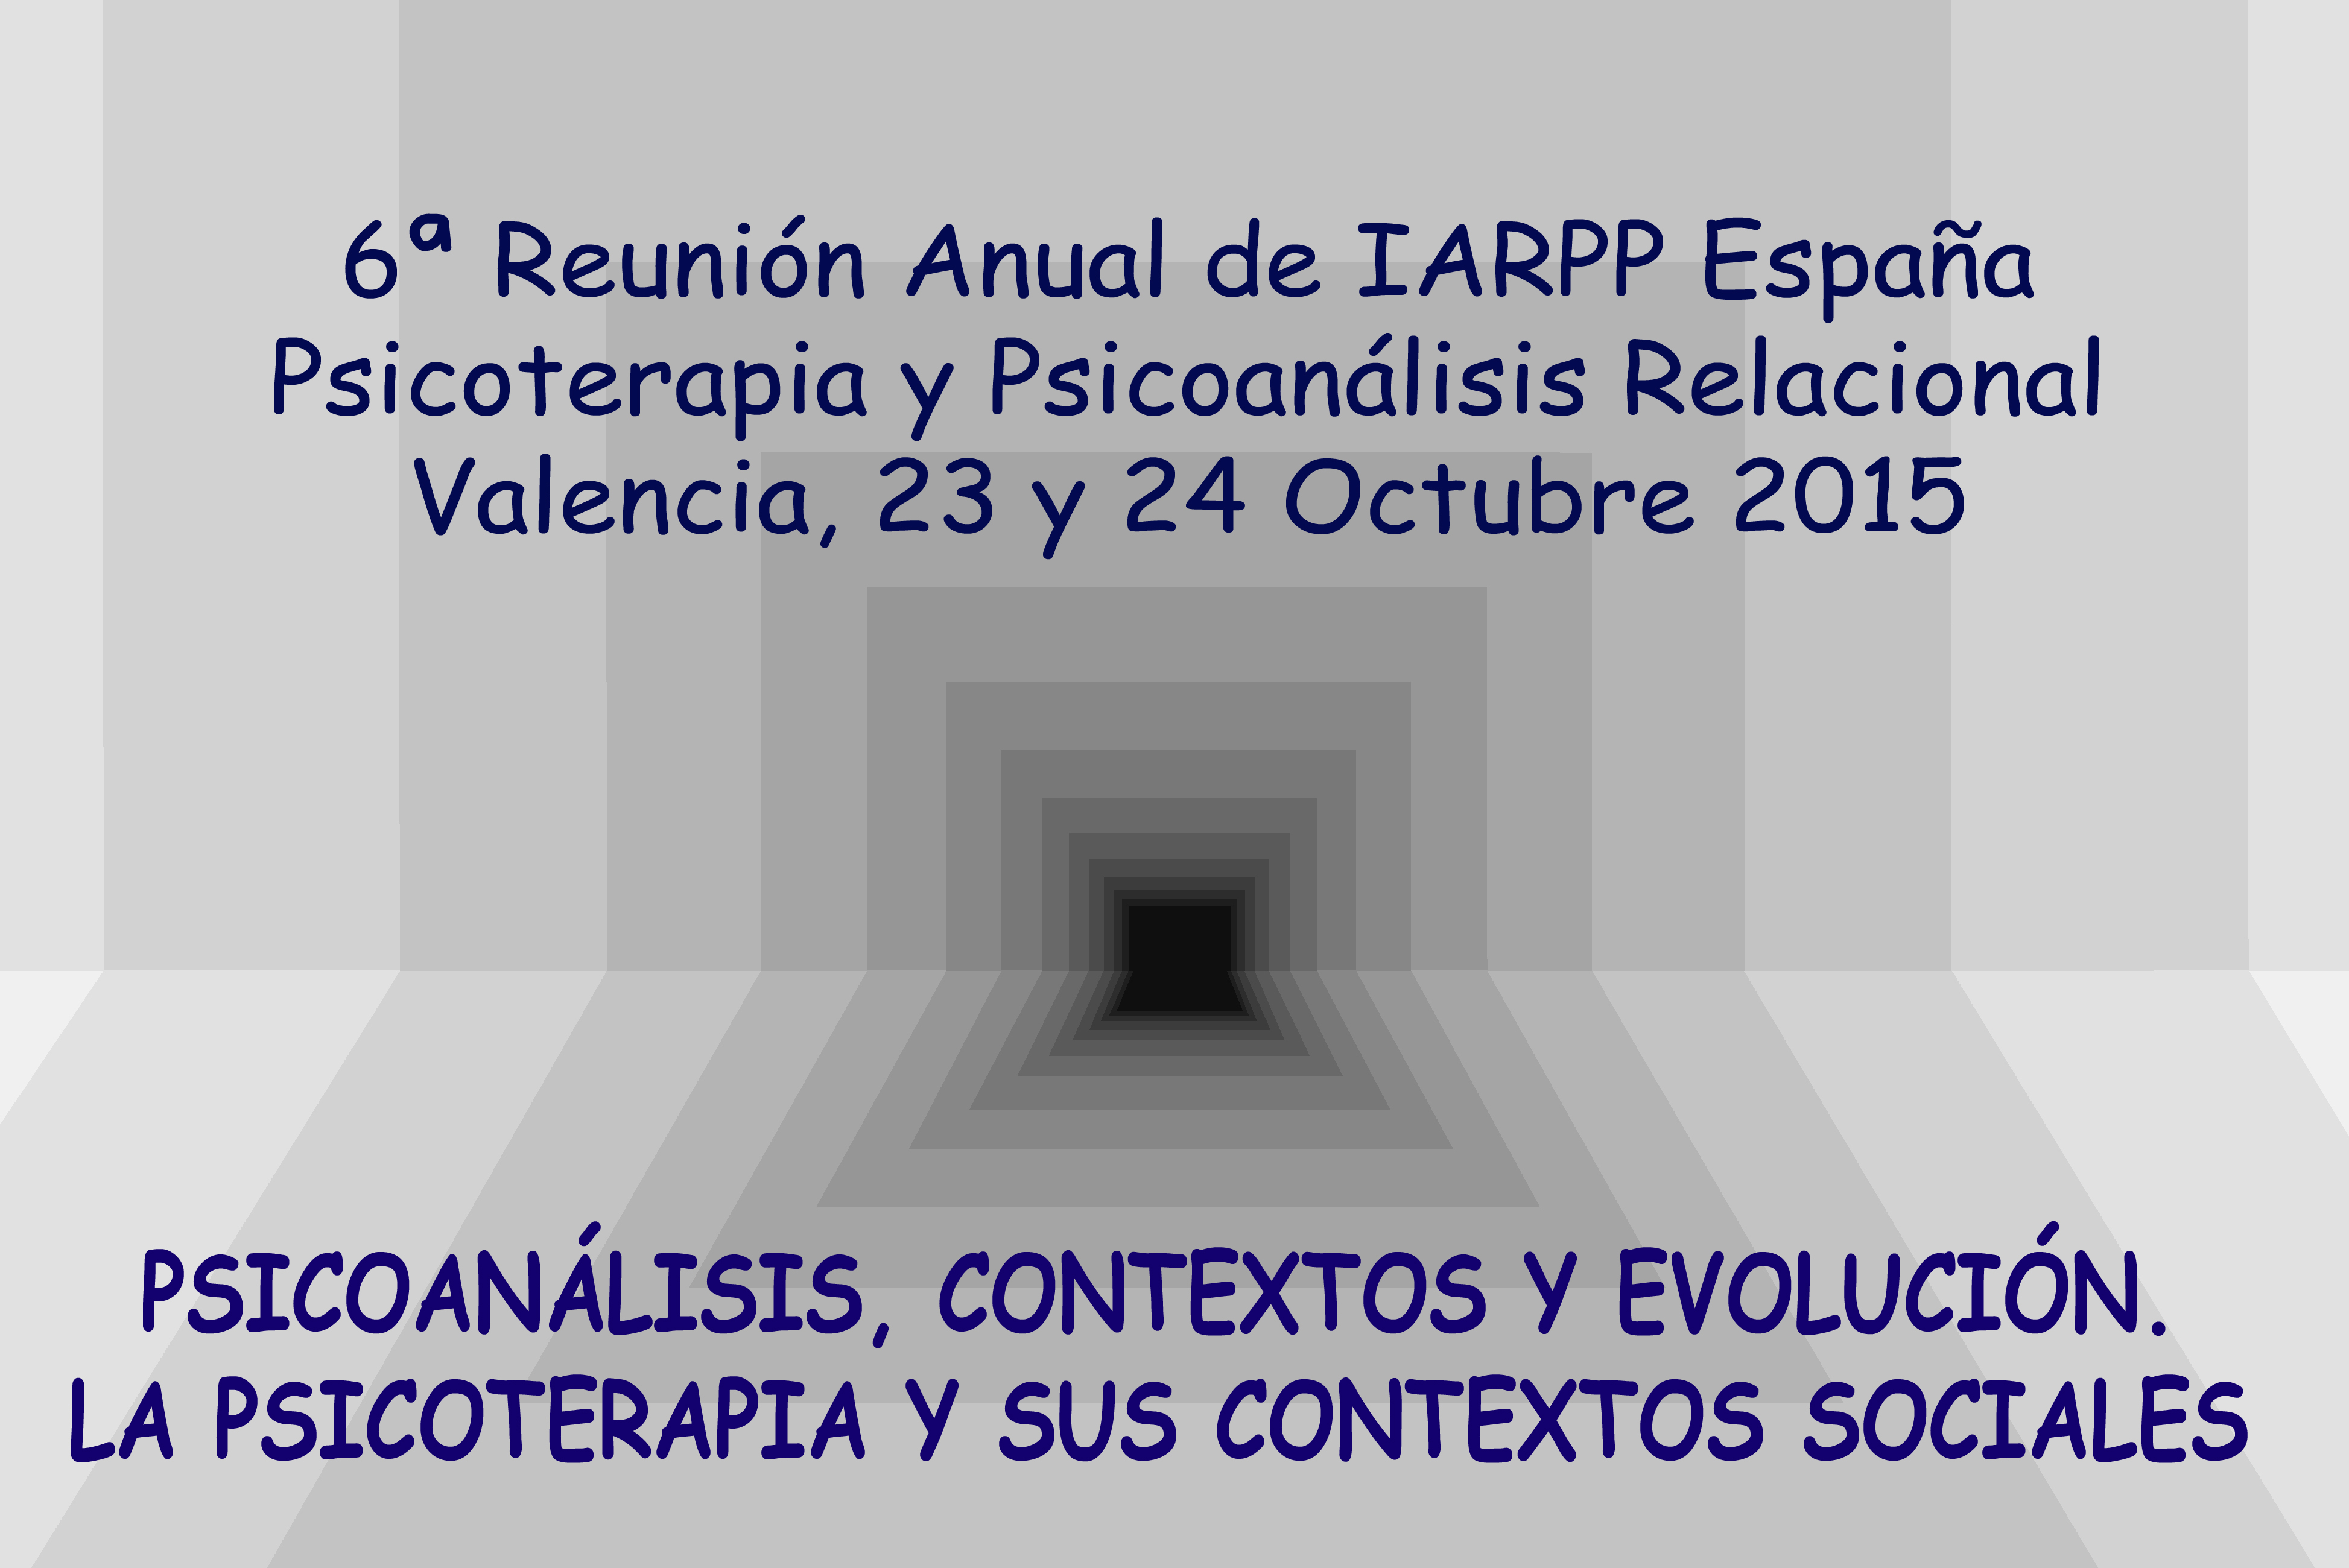 6a Reunion IARPP: Valencia, 2015